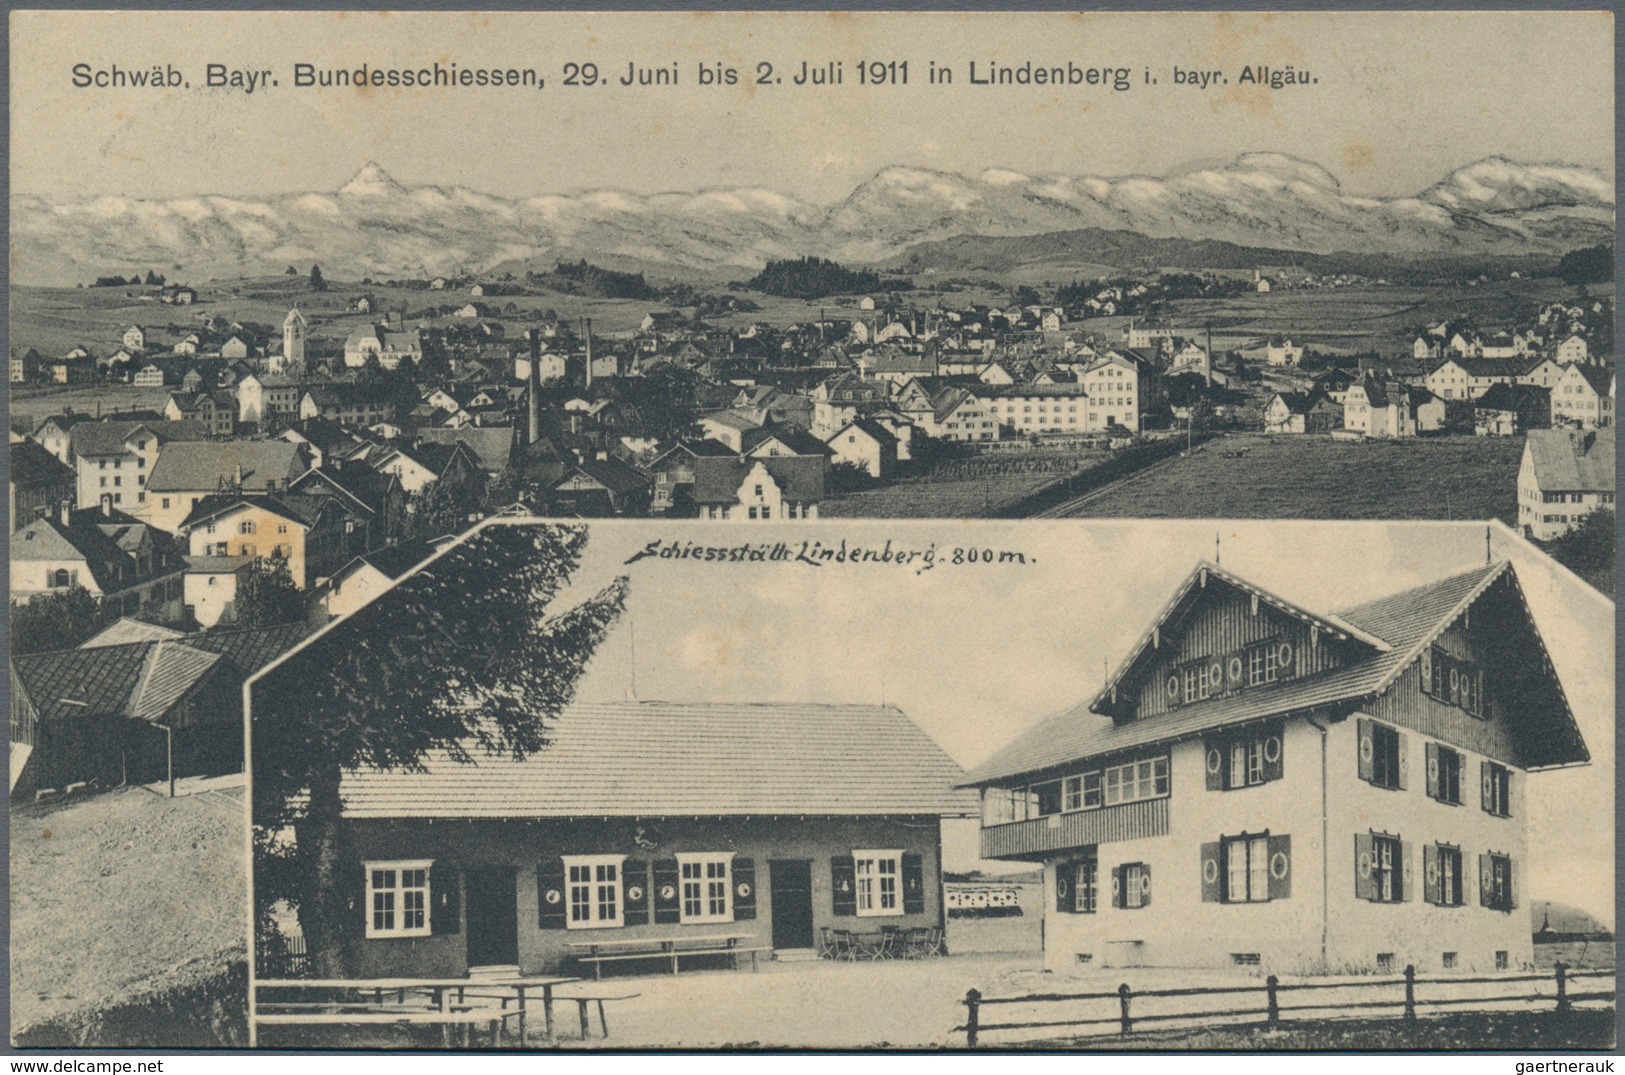 Ansichtskarten: Bayern: BAYERISCH SCHWABEN, kleine Schachtel mit 61 historischen Ansichtskarten Regi